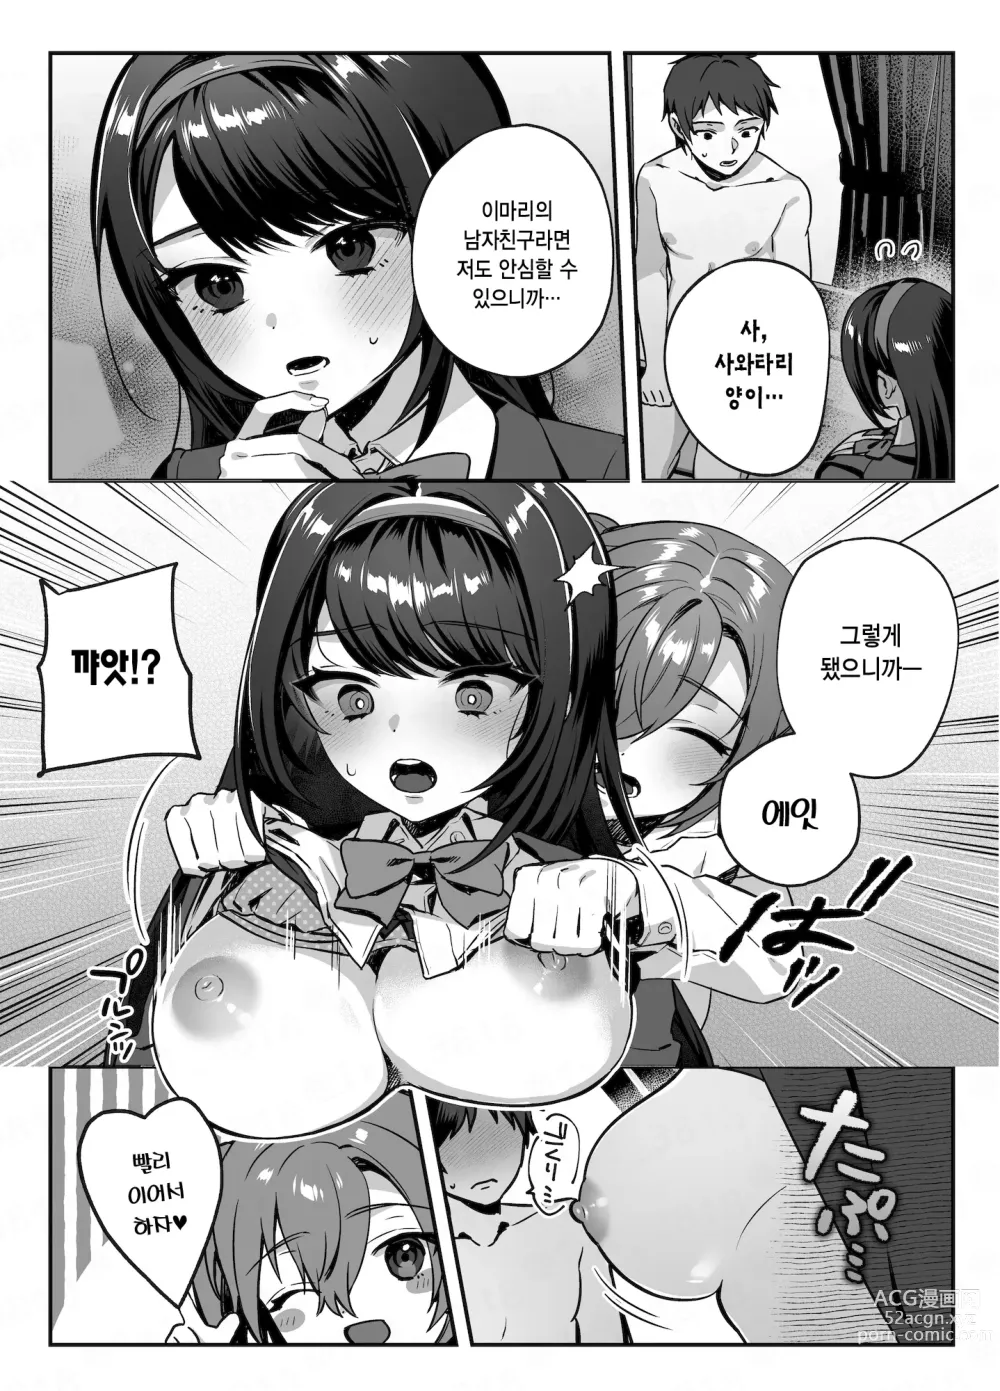 Page 14 of doujinshi nikukyu 총집편 두번쨰